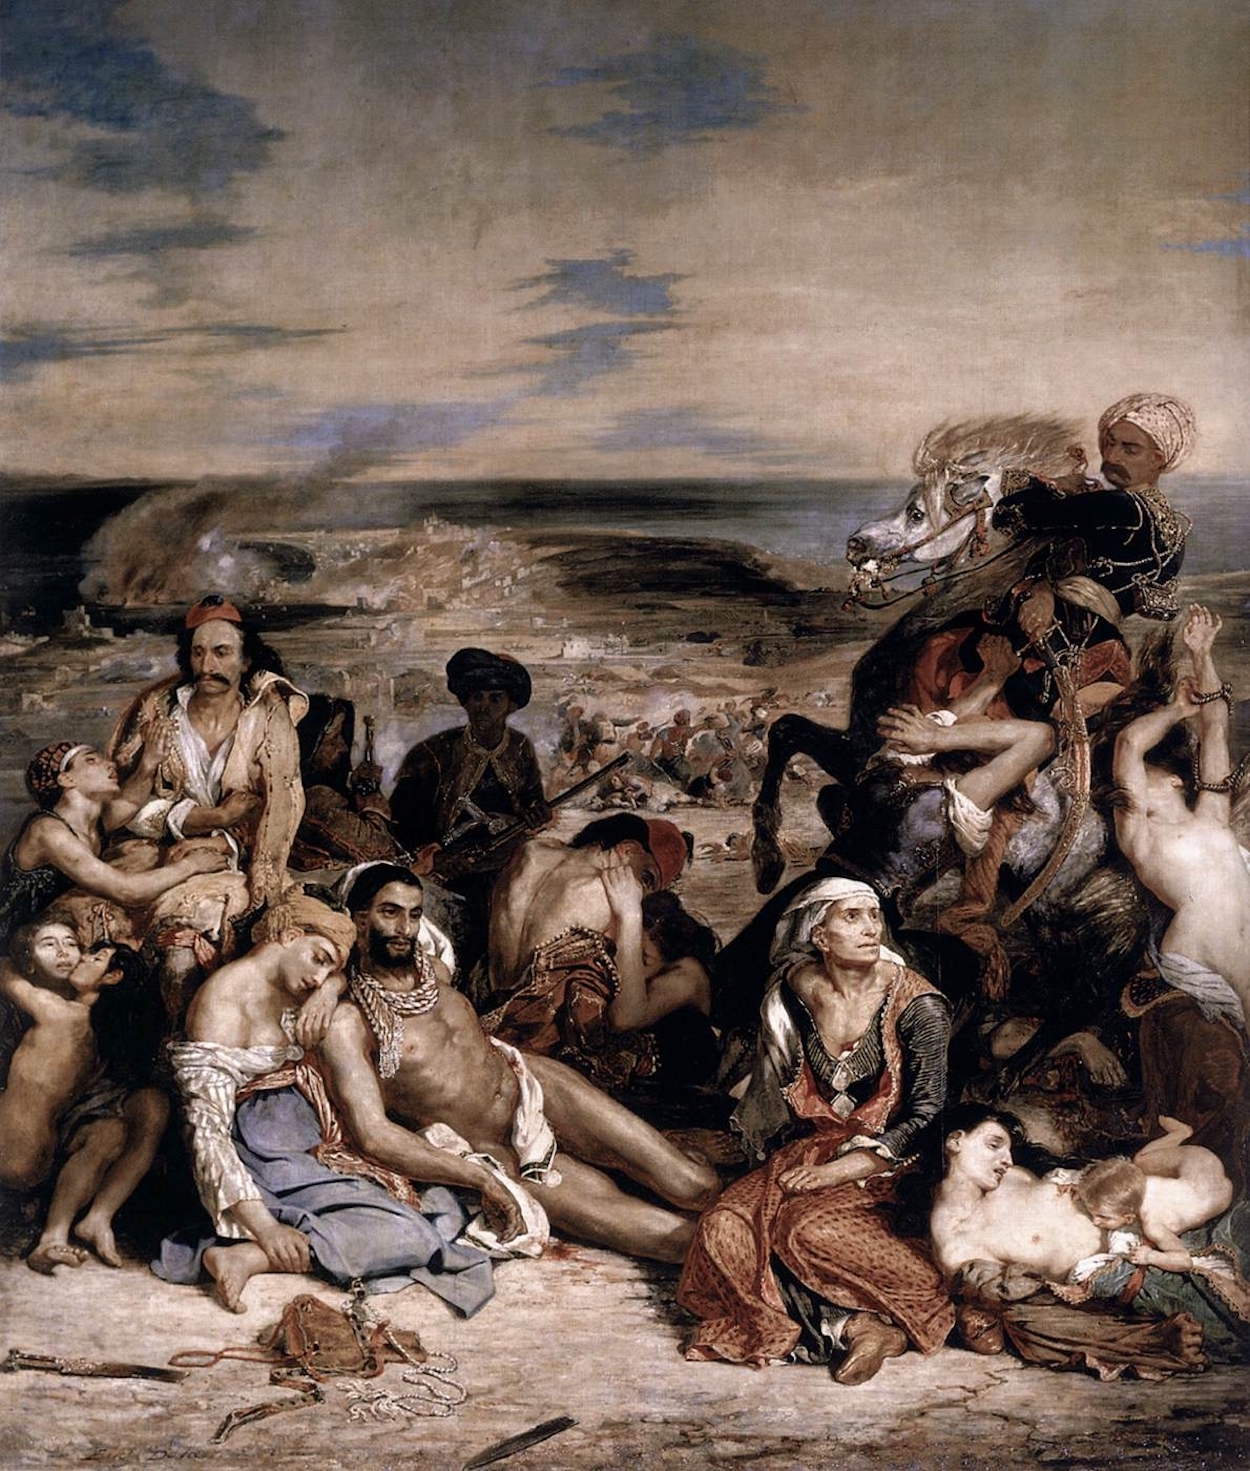 Masakra na Chios by Eugène Delacroix - 1824 - 419 cm × 354 cm 